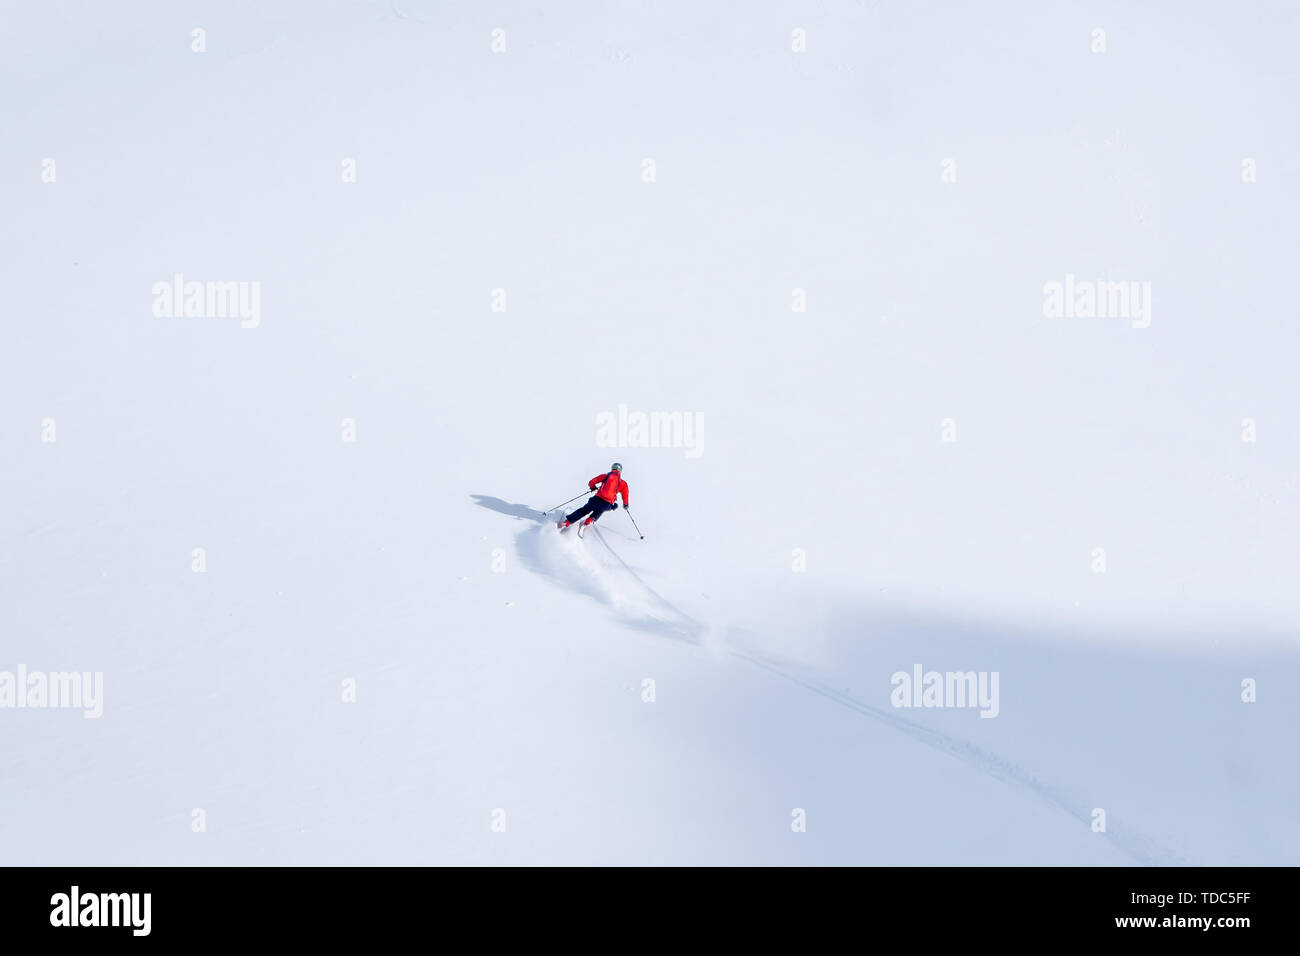 Skieur freeride en pente de montagne couverte de neige en hiver, faire les premières traces dans la neige vierge intacte Banque D'Images